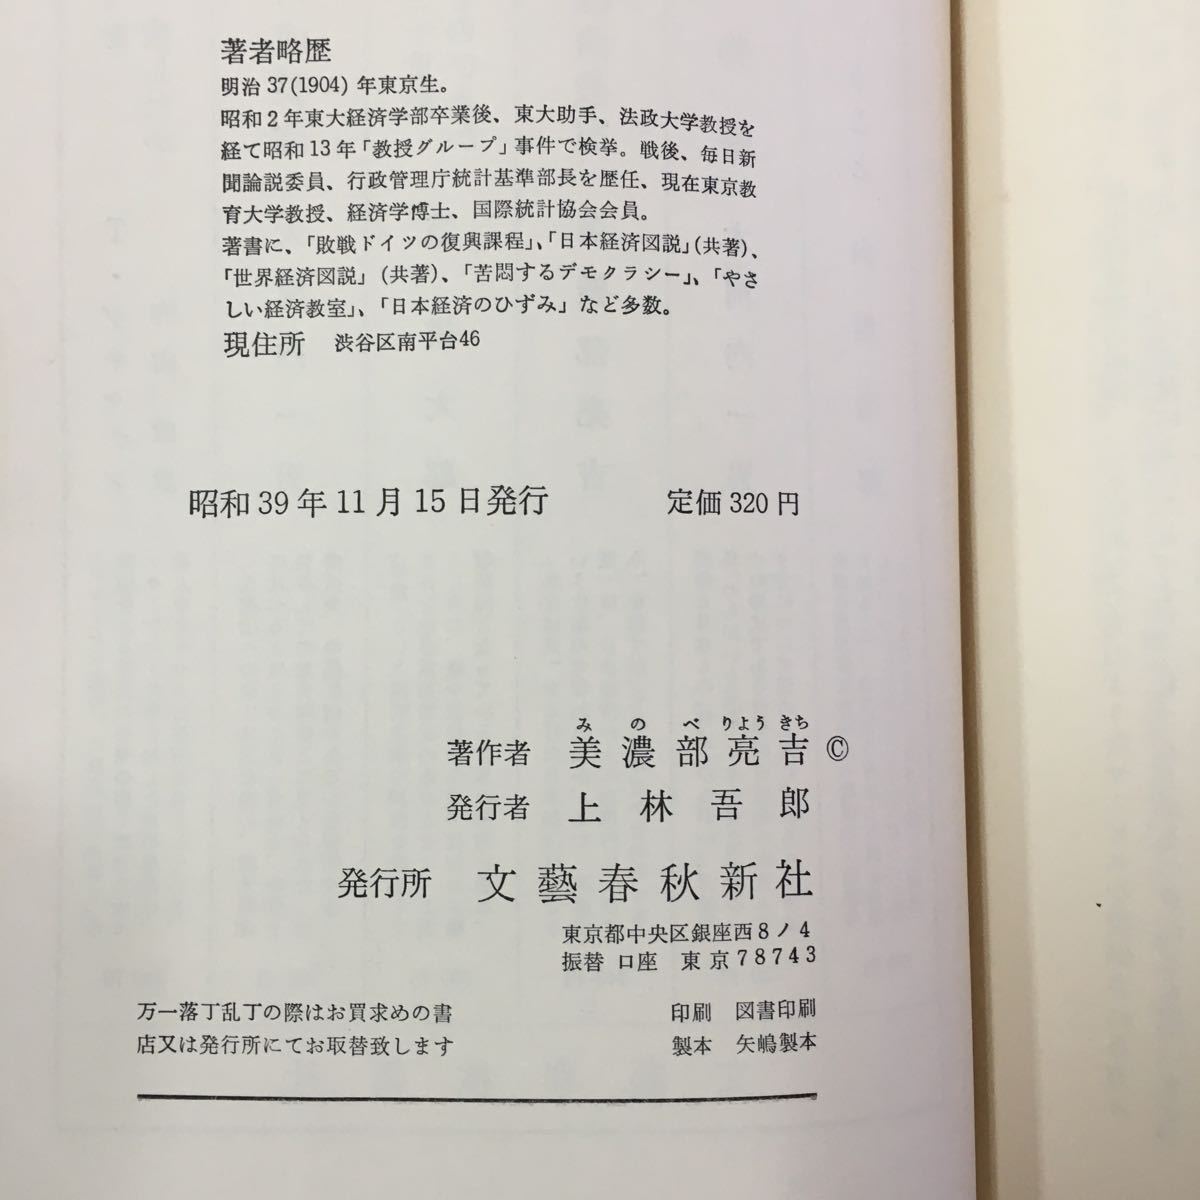 S7f-188 日本人のくらし 続 やさしい経済教室 昭和39年11月15時発行 著作者/美濃部亮吉 ページ折れ書き込み変色色褪せ有り _画像8